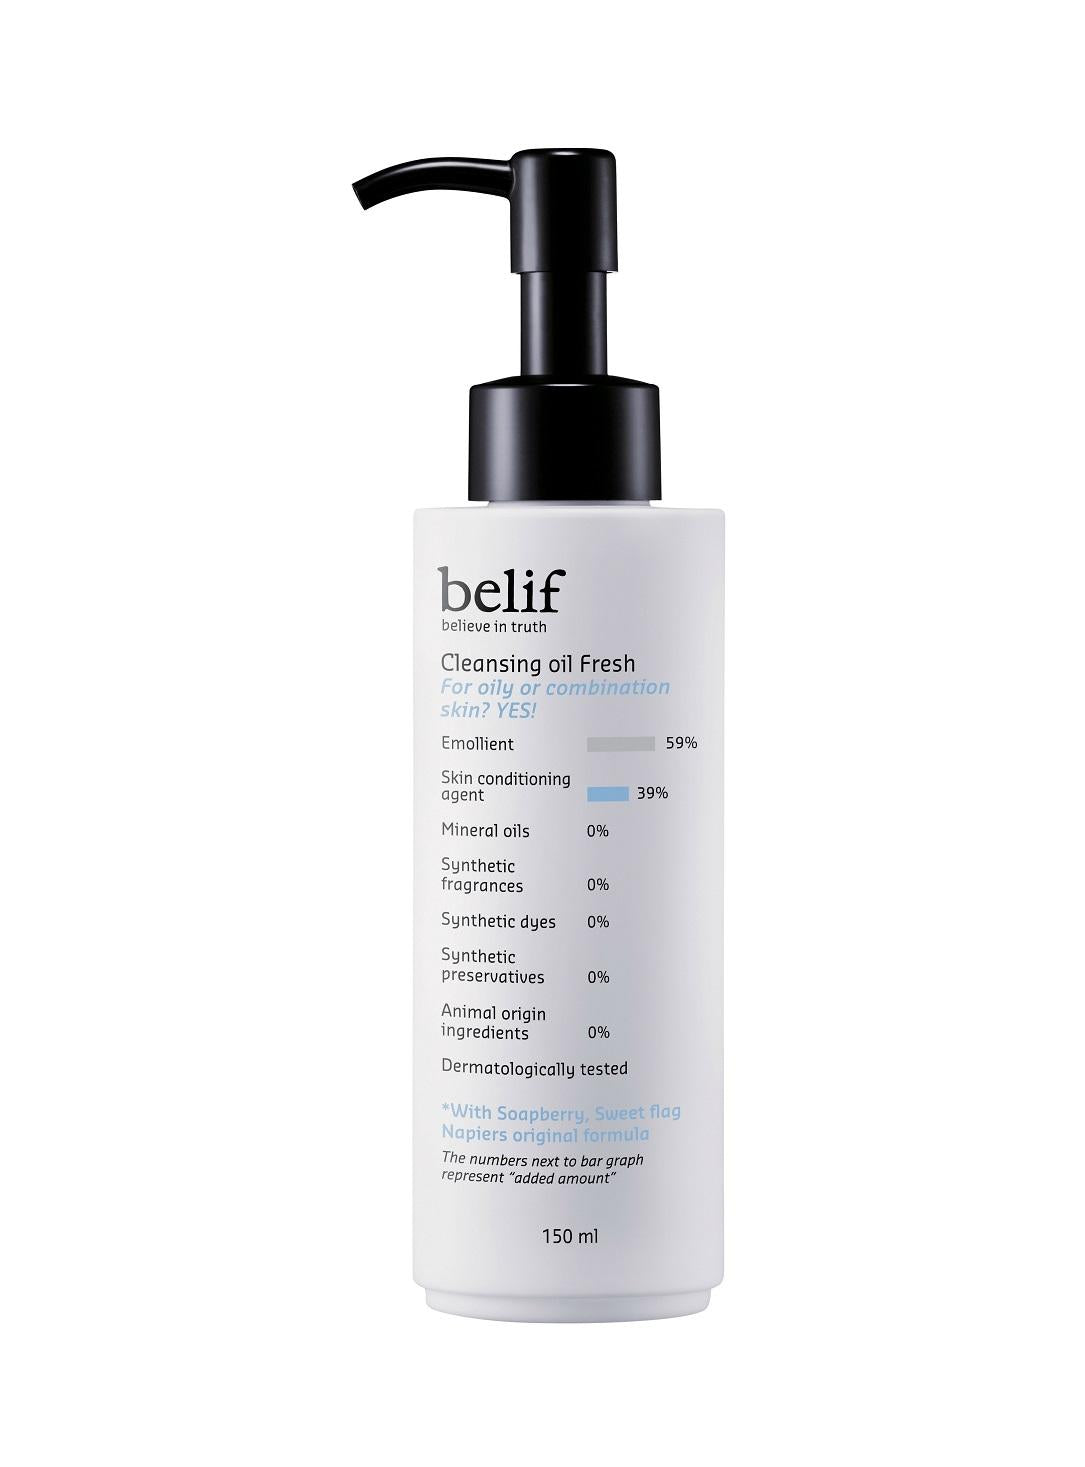 belif -  Cleansing oil fresh 150 ml